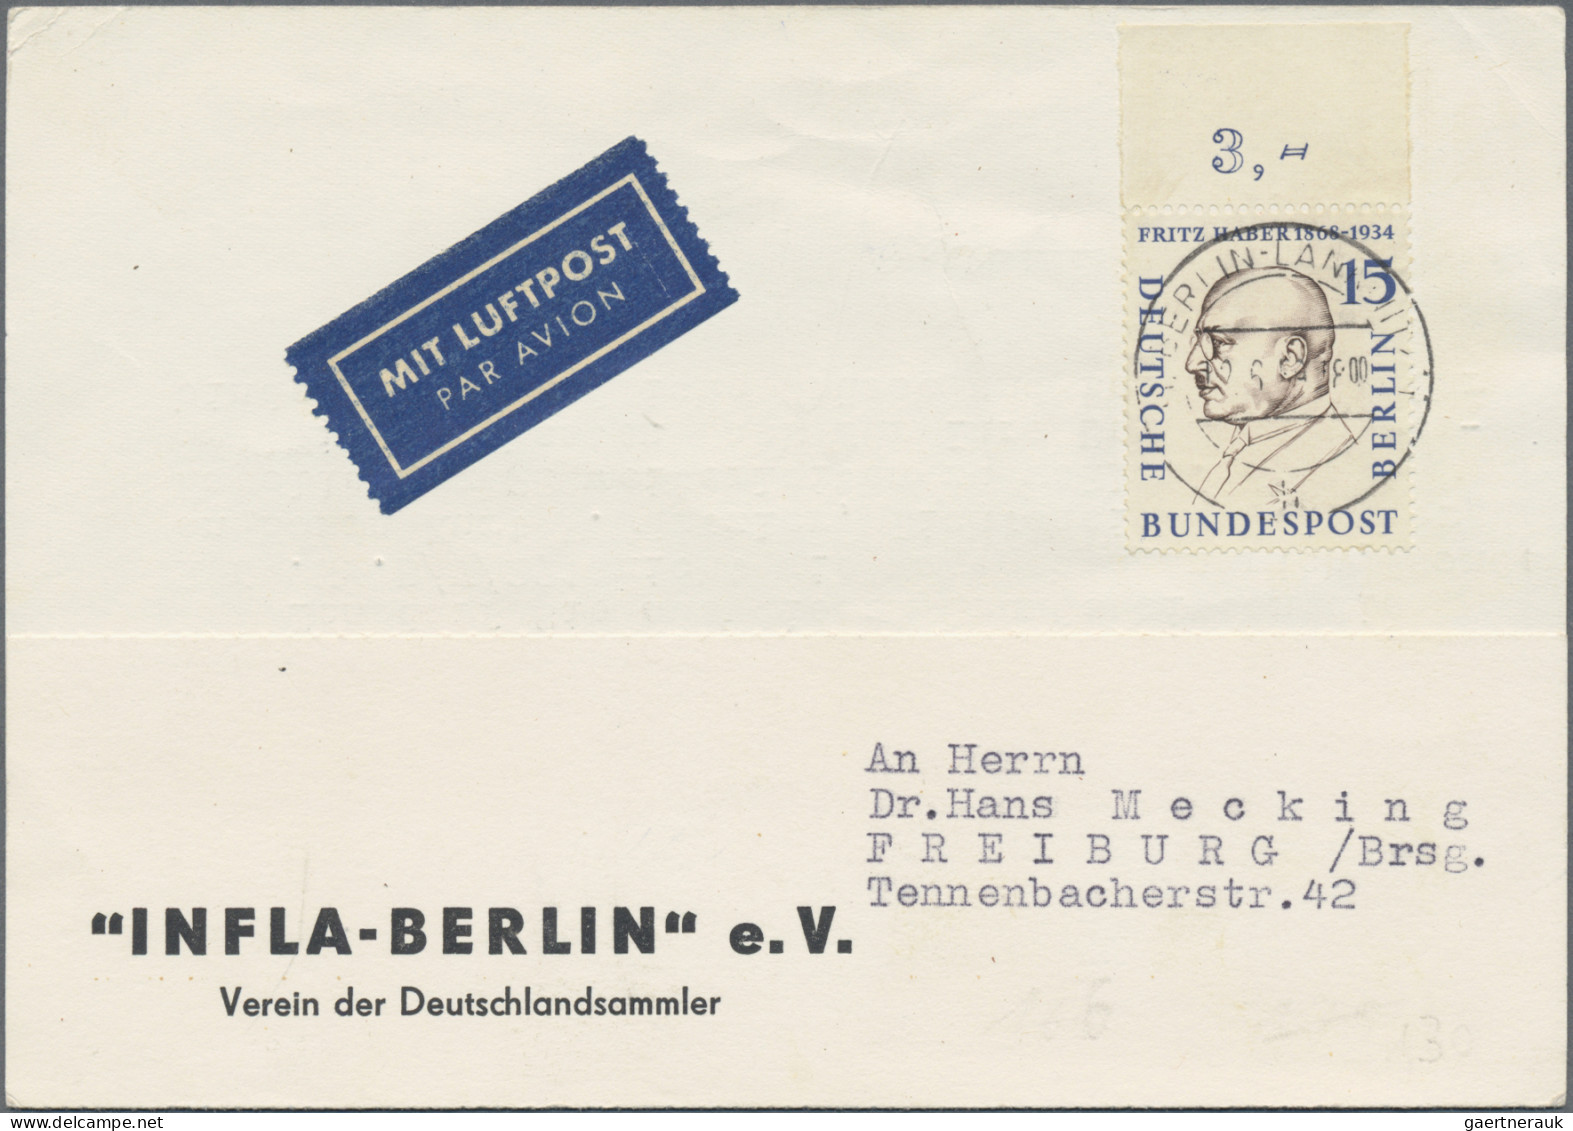 Berlin: 1952/1967, Partie von ca. 121 Bedarfs-Briefen und -Karten, alle mit auss